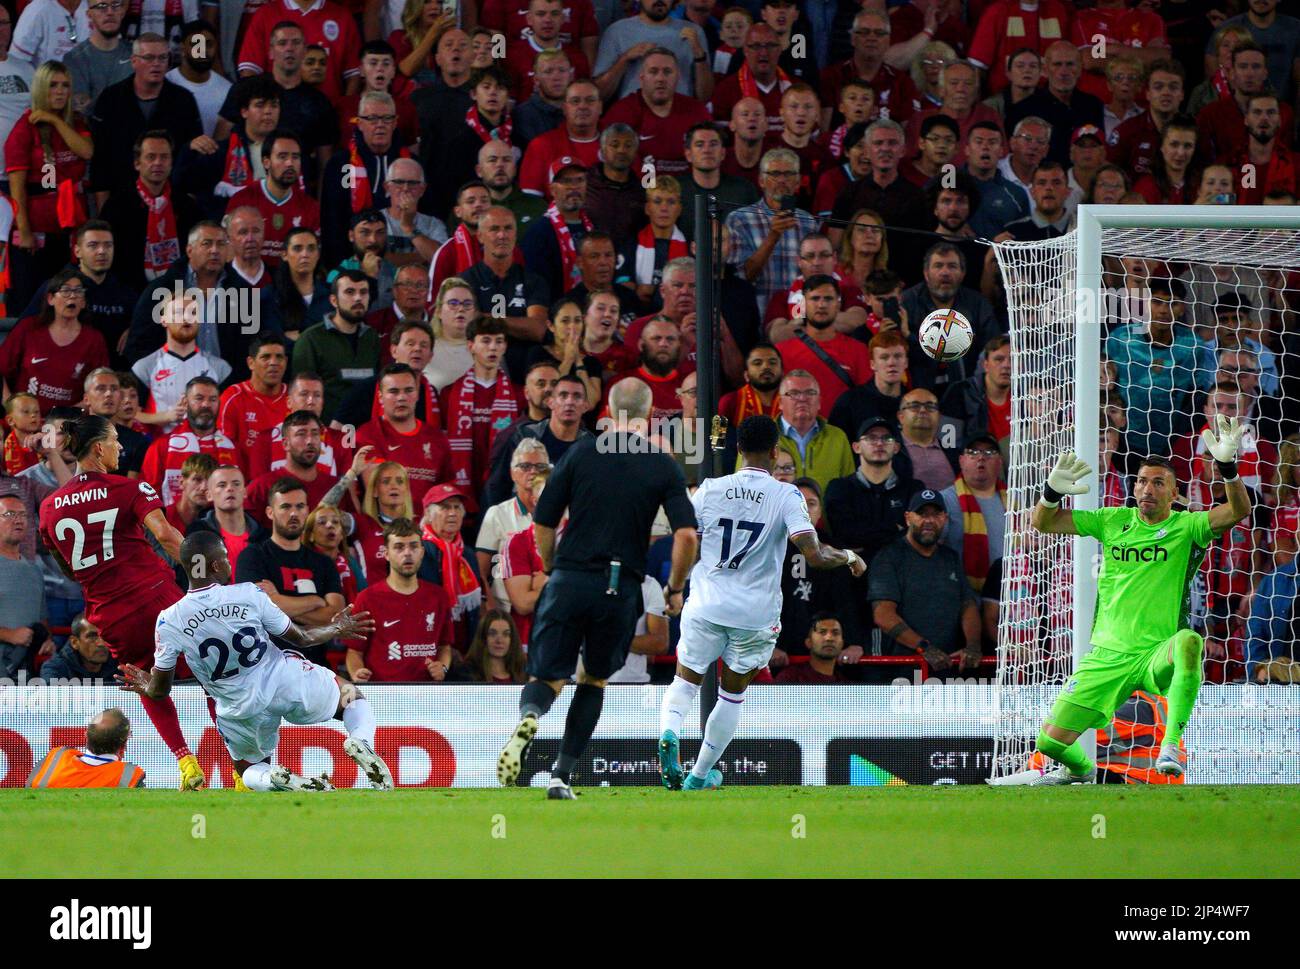 Darwin Nunez (izquierda) del Liverpool intenta un tiro al gol durante el partido de la Premier League en Anfield, Liverpool. Fecha de la foto: Lunes 15 de agosto de 2022. Foto de stock